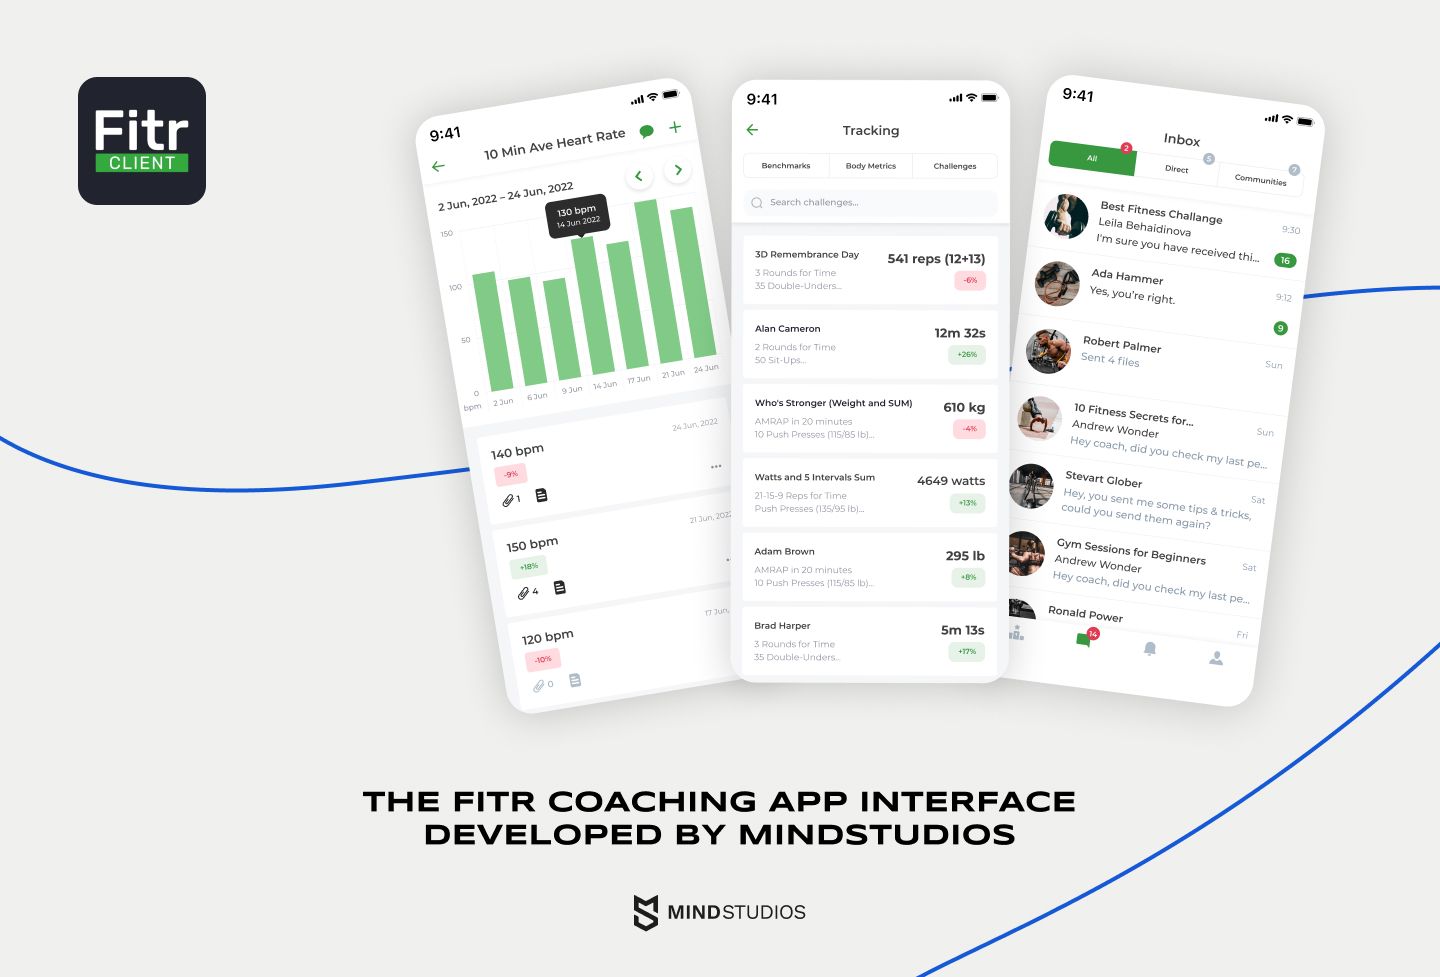 L'interface de l'application de coaching Fitr développée par Mind Studios